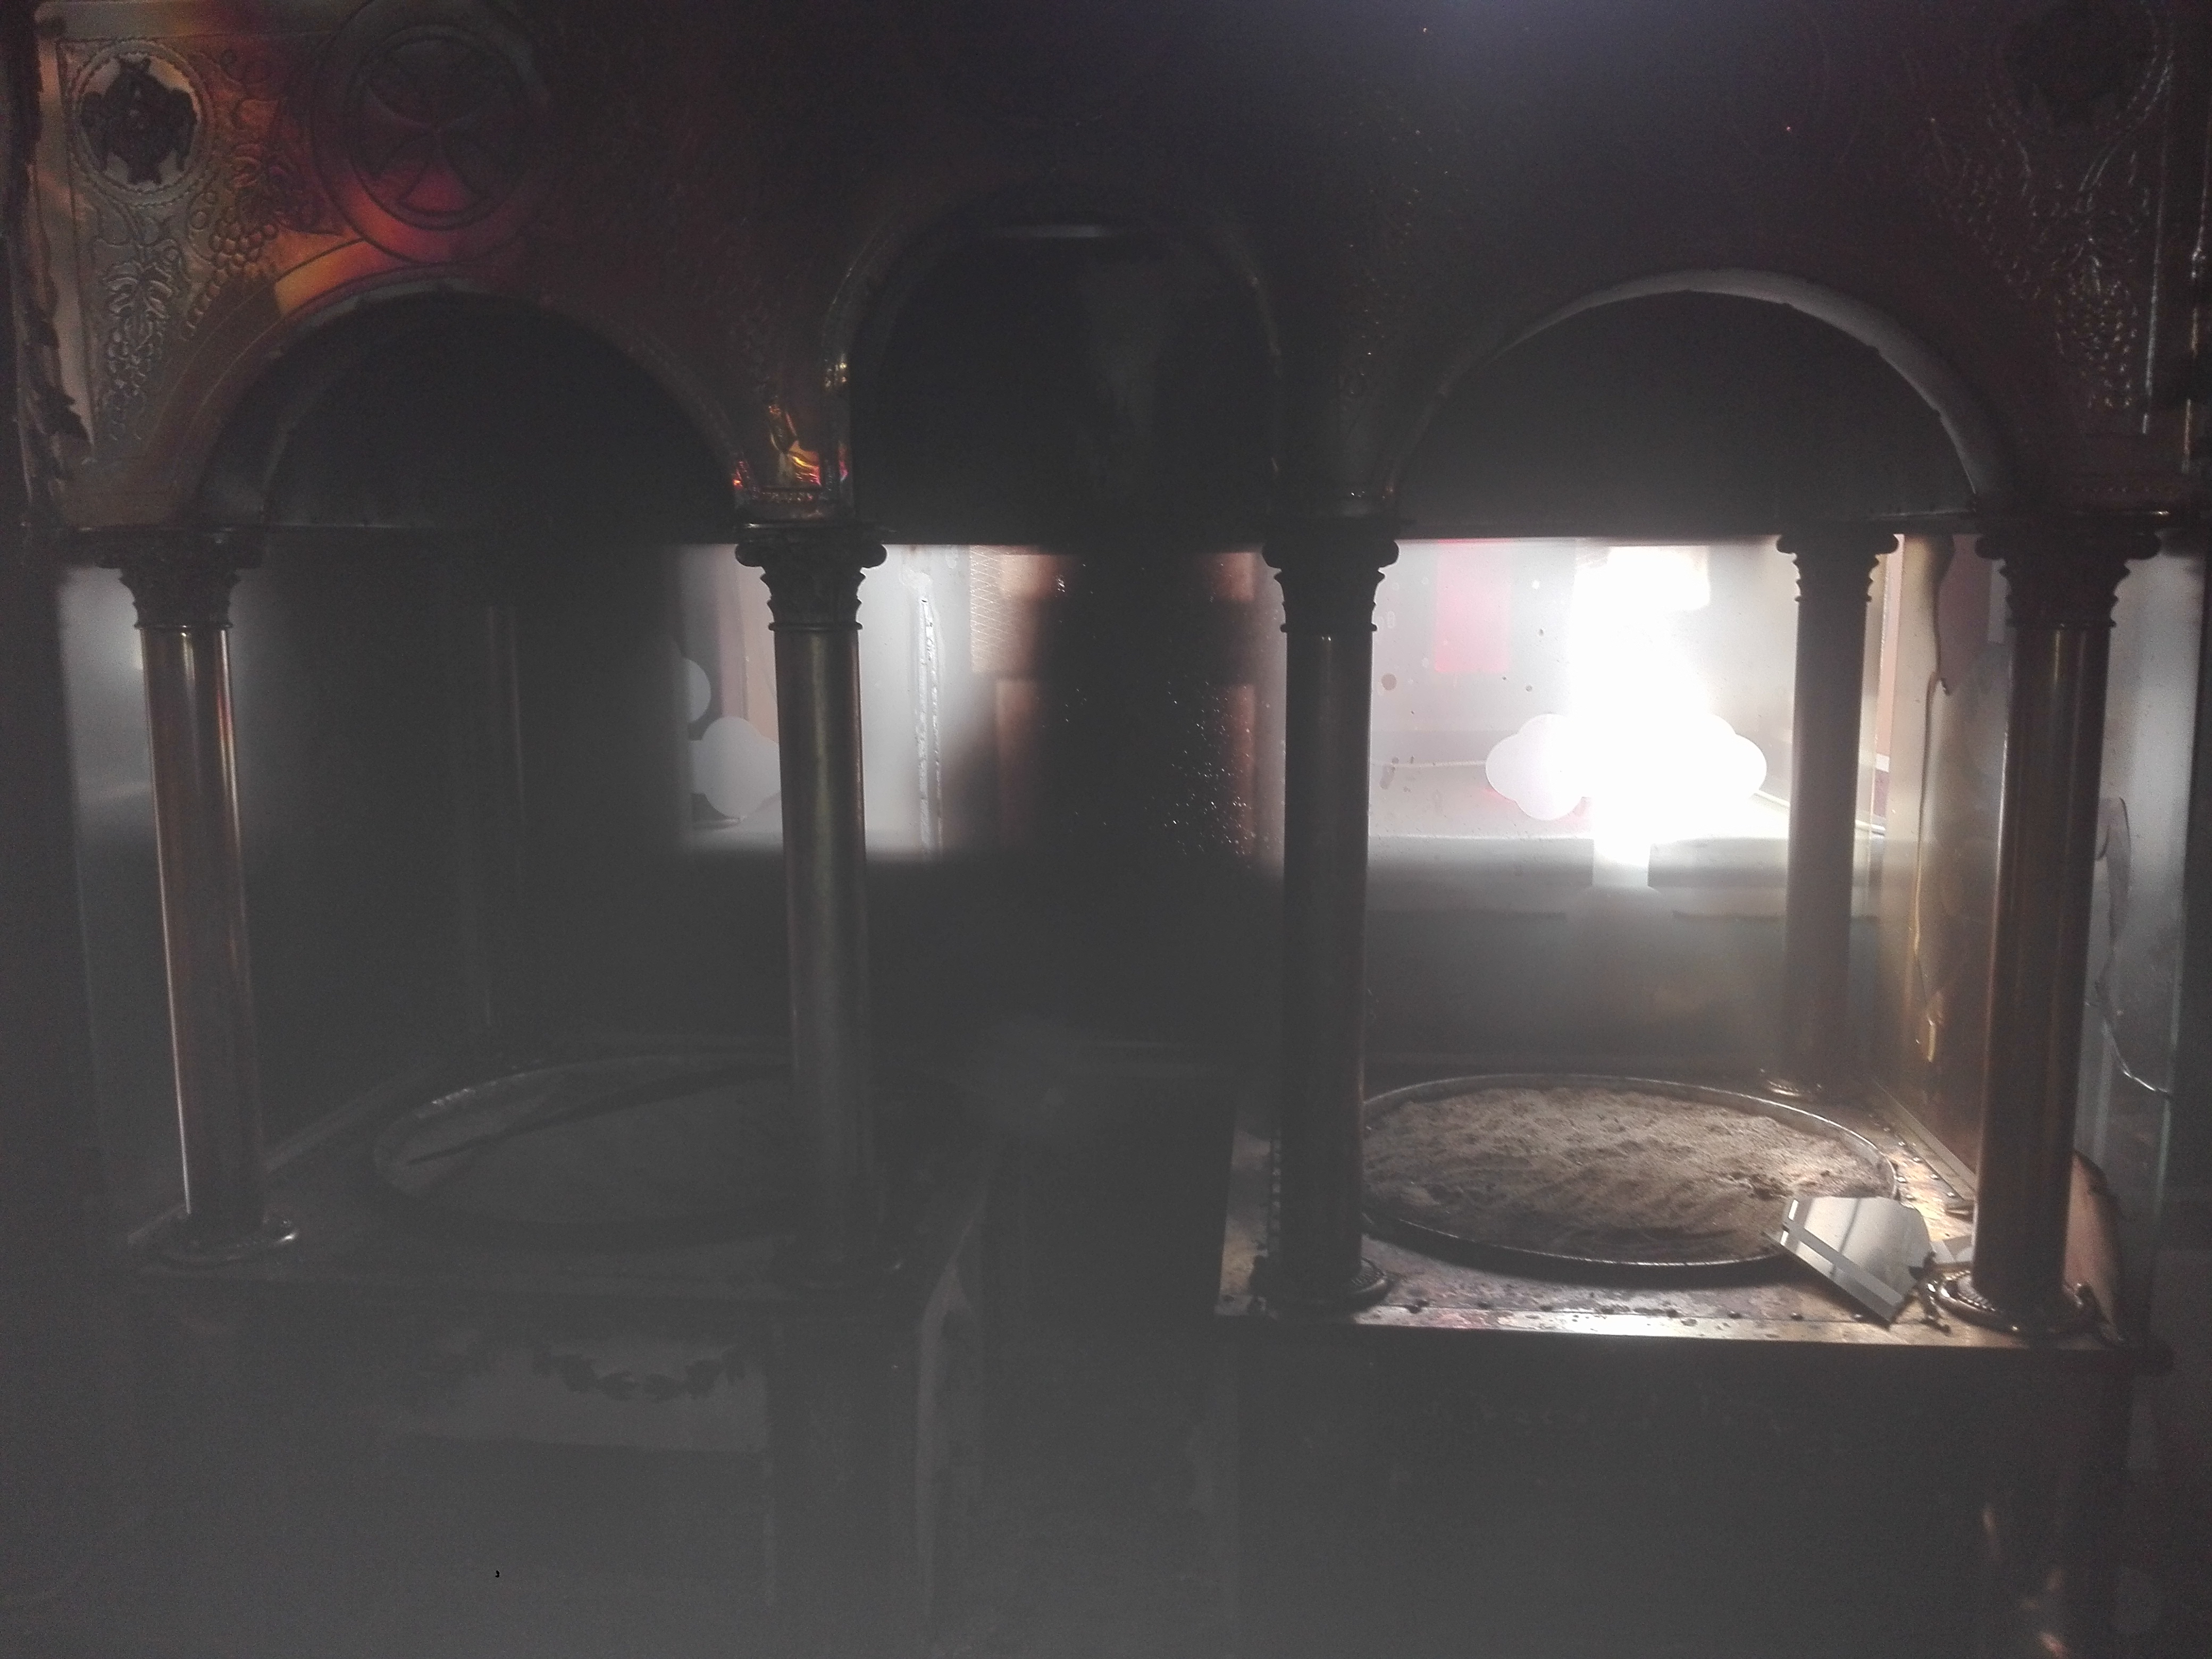 Με πυρκαγιά απειλήθηκε ο Ιερός Ναός Αγ. Νικολάου στη Σούδα (φωτο)